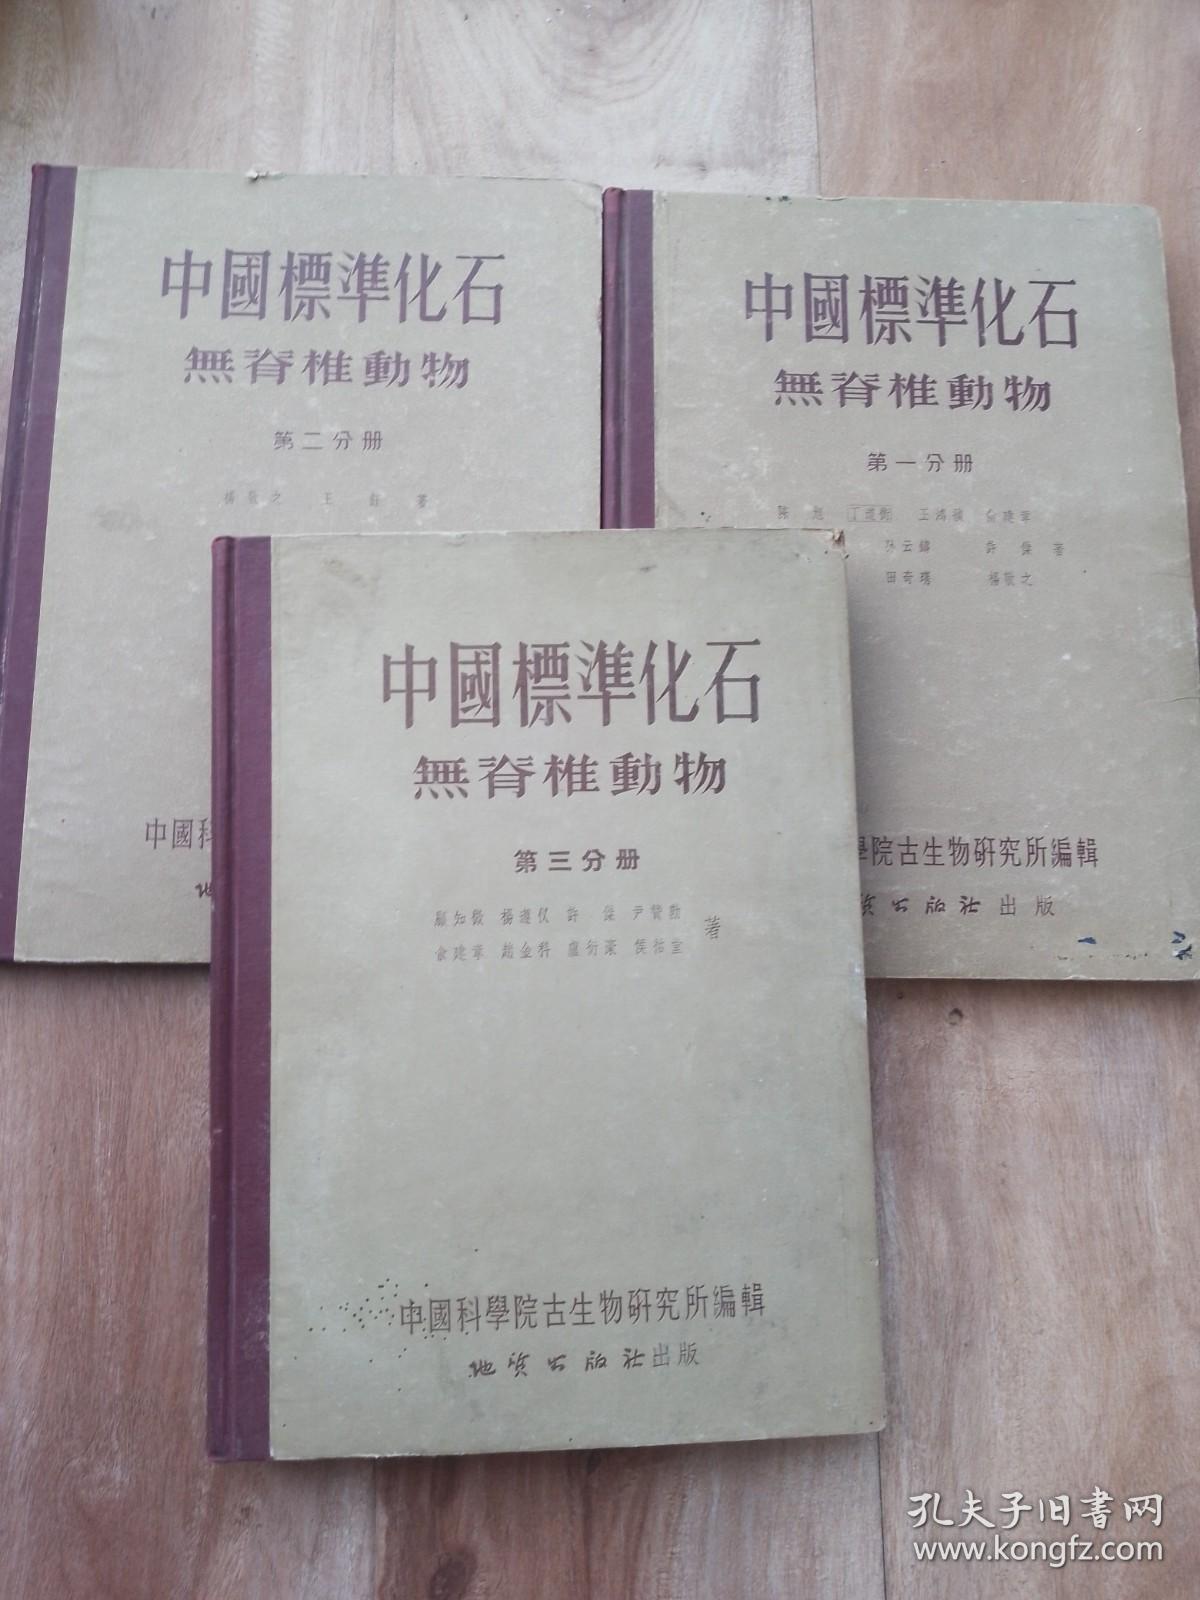 《中国标准化石》〈无脊椎动物〉1， 2， 3册全